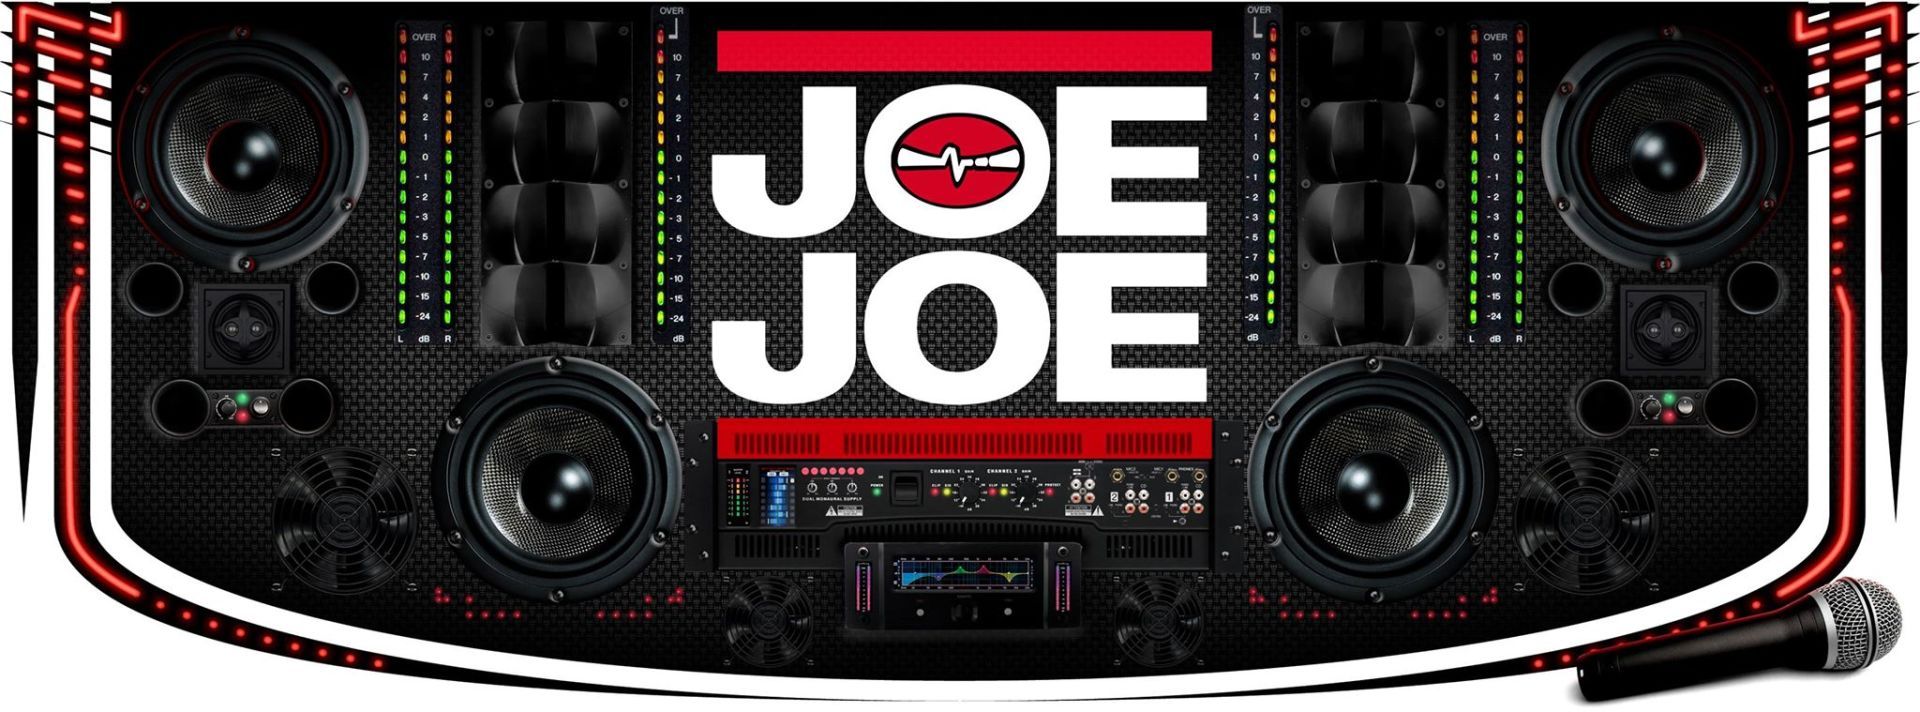 NEW DJ MIX FROM DJ JOE-JOE